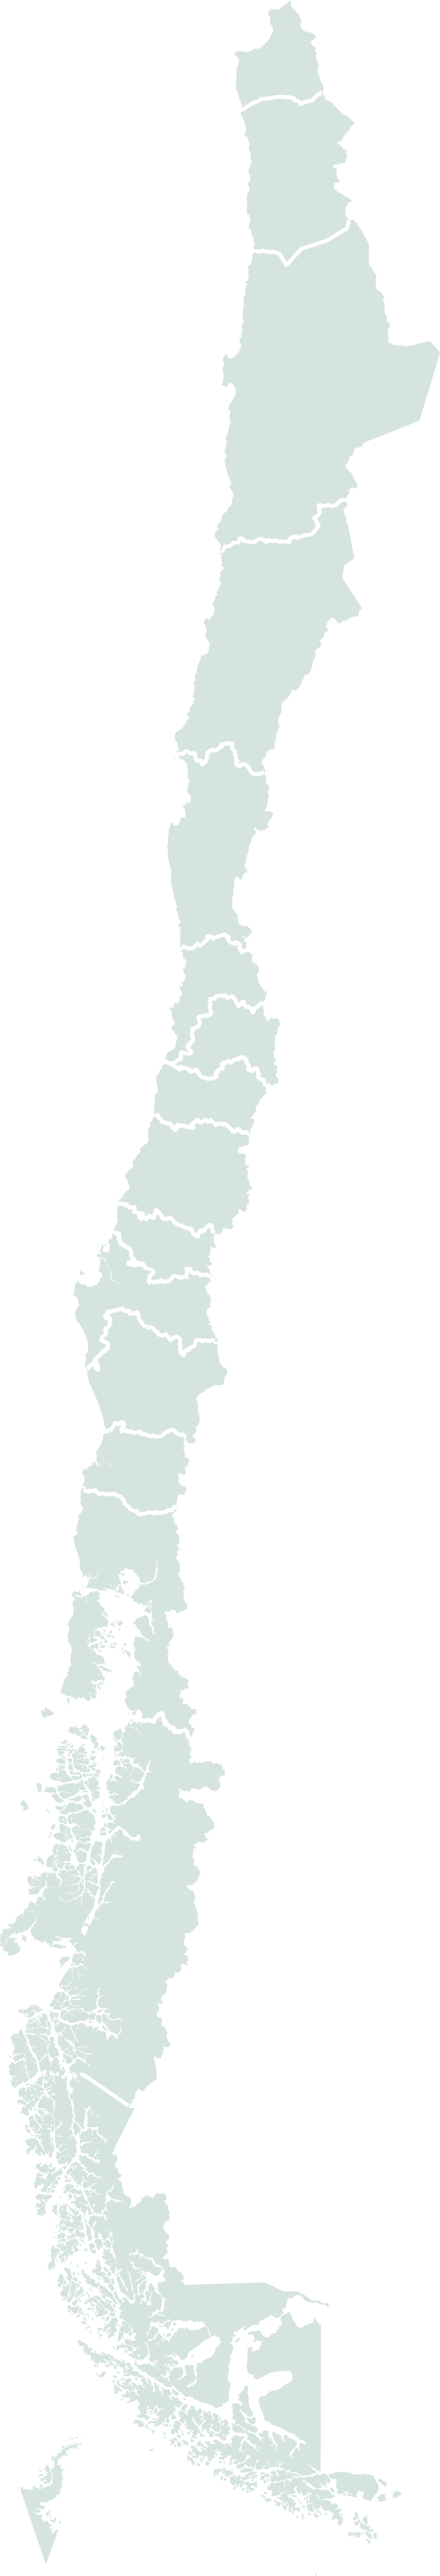 Mapa de Chile con Centros Regionales INIA 